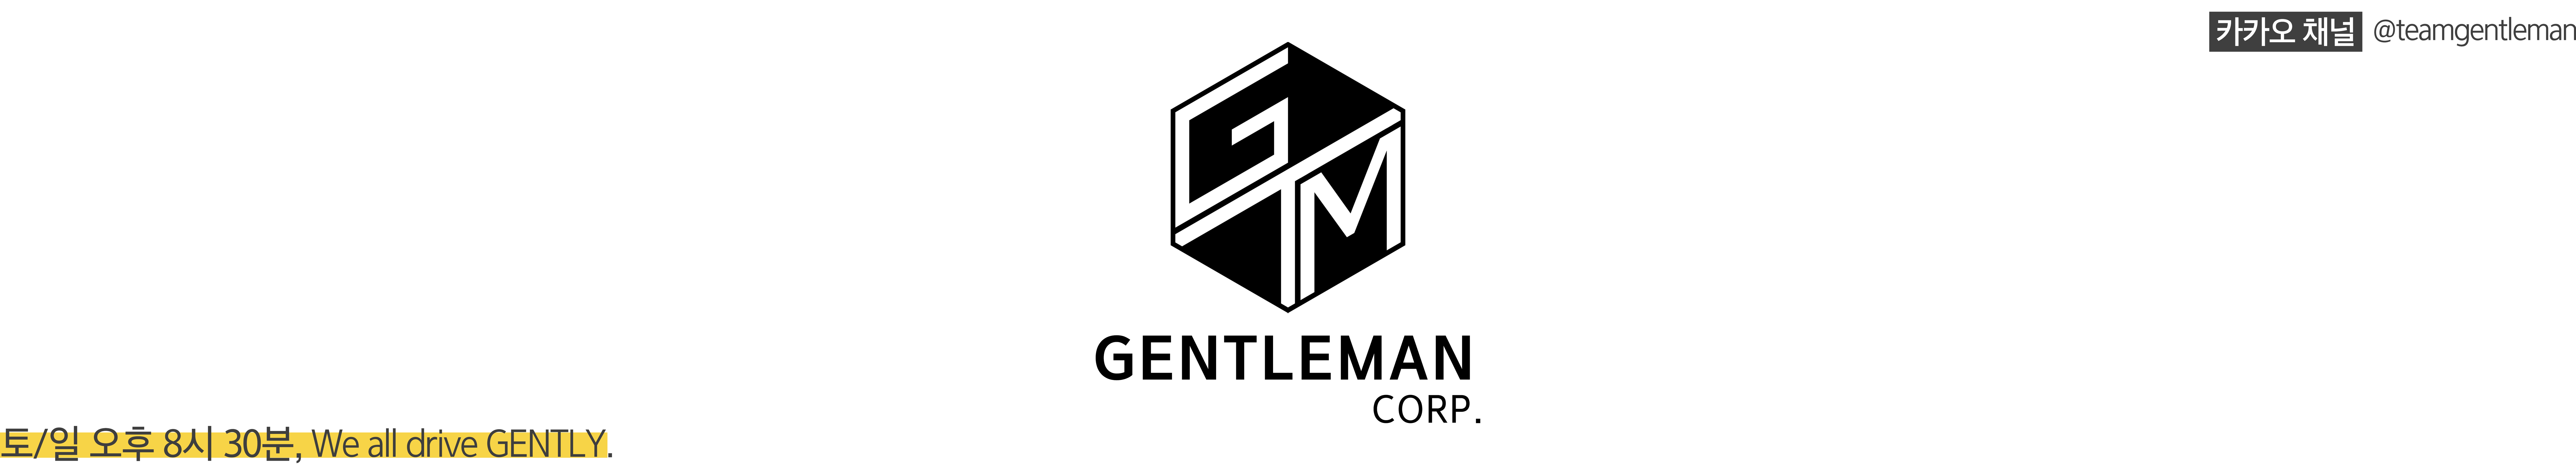 Gentleman Corp.